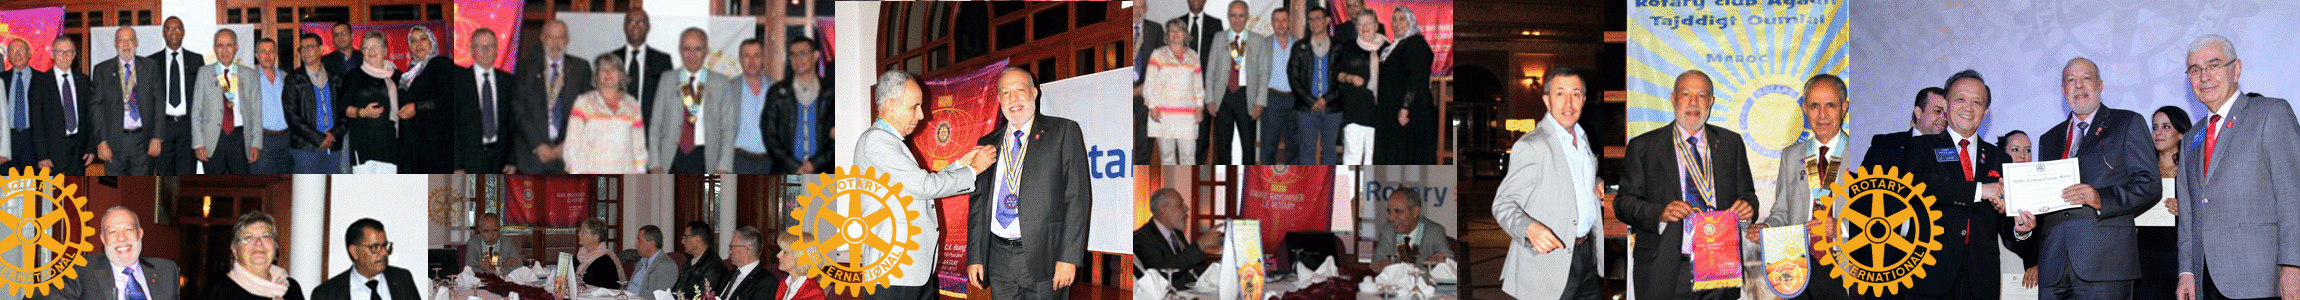 Rotary Club Agadir Tajddigt Oumlal